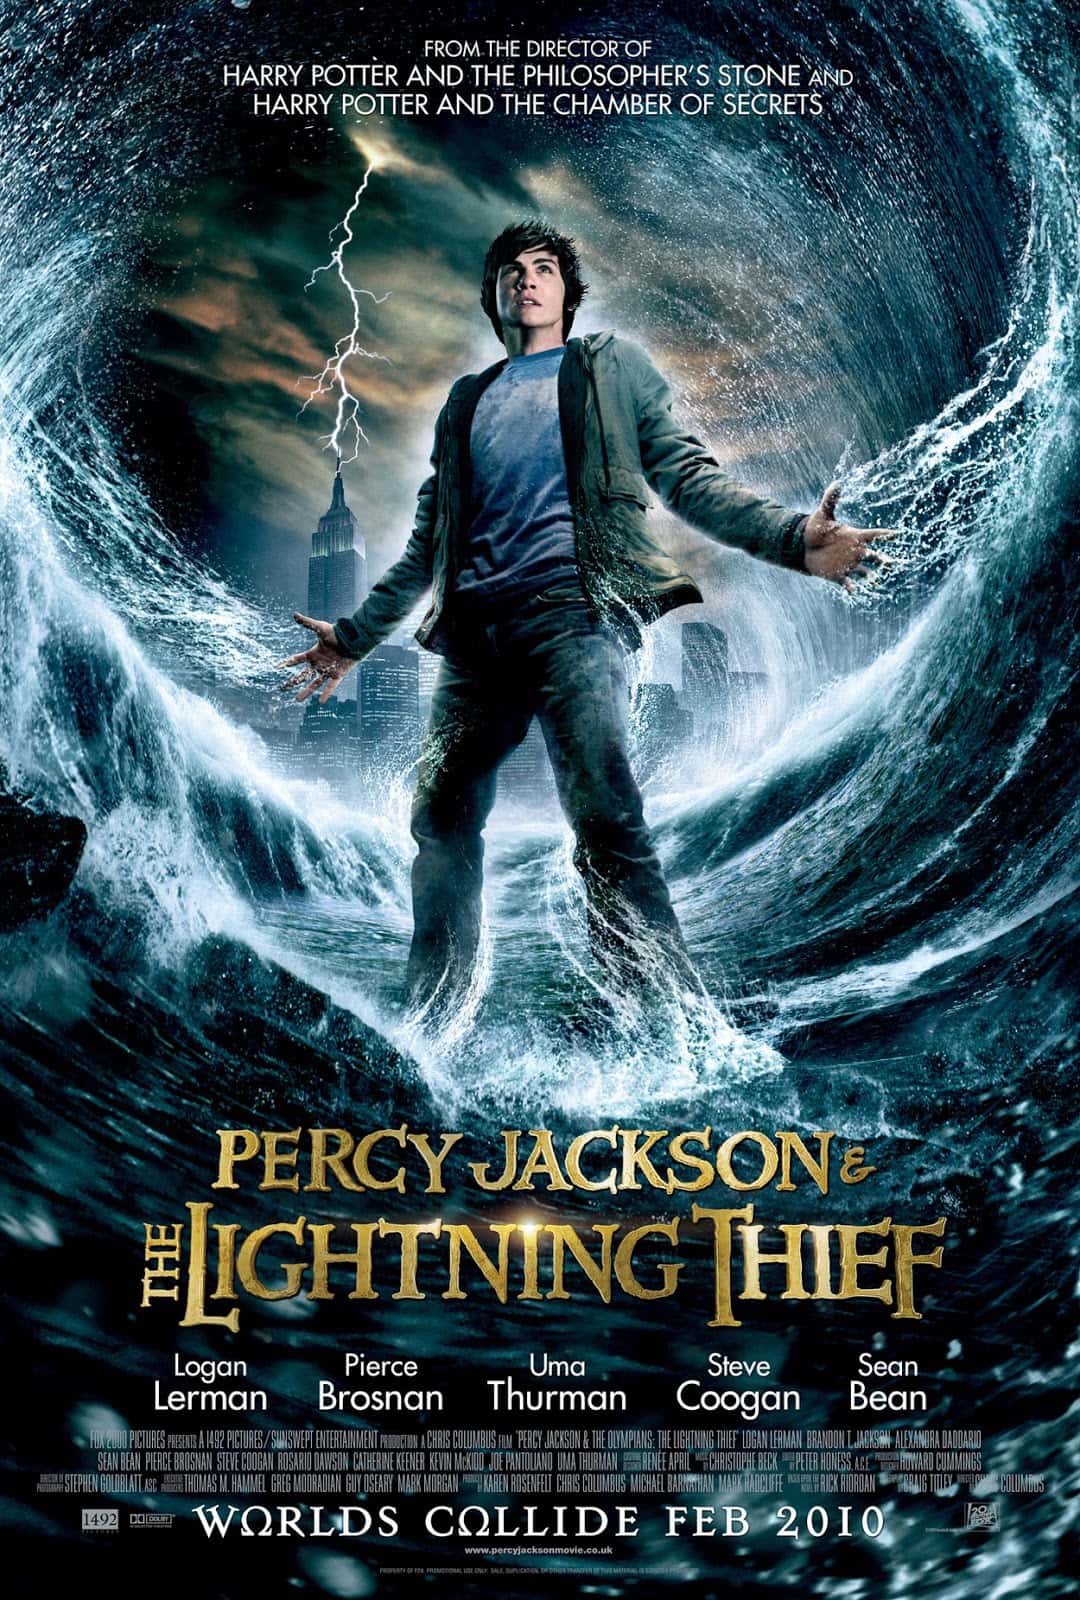 Percy Jackson 1 (2010) เพอร์ซีย์ แจ็คสัน 1 กับสายฟ้าที่หายไป